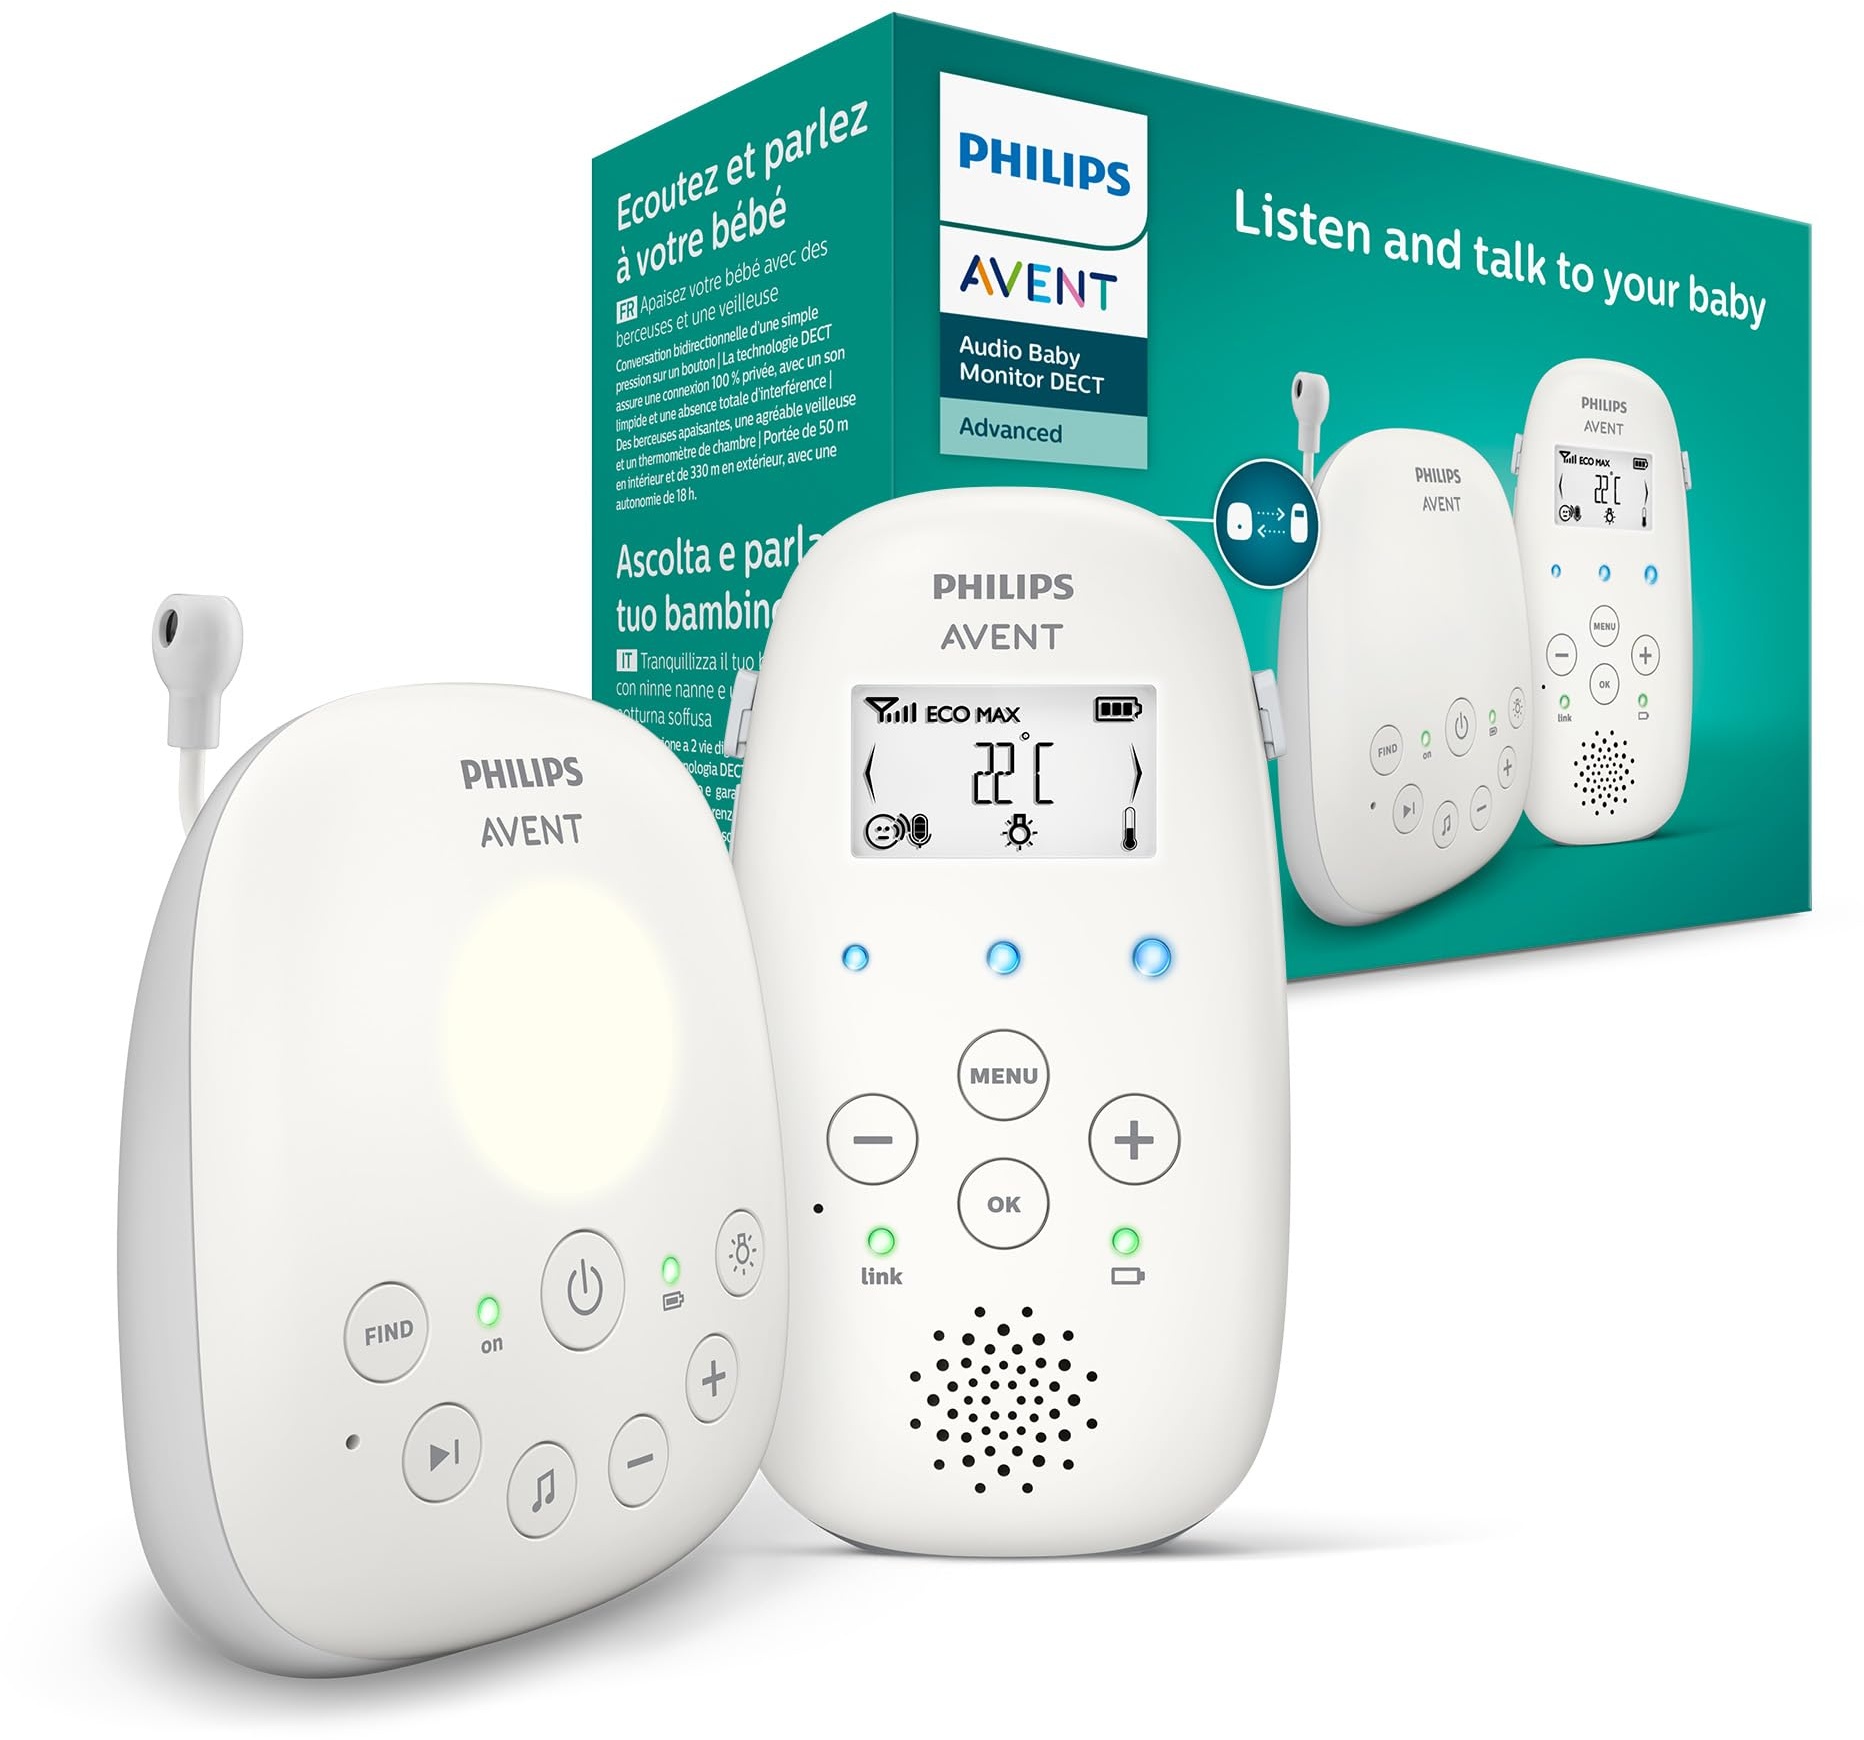 ‎Philips Avent Audio Babyphone DECT-Technologie, Eco-Mode, Gegensprechfunktion, Schlaf- und Nachtlieder, Temperatursensor, maximale Reichweite, weiß (Modell SCD713/26)